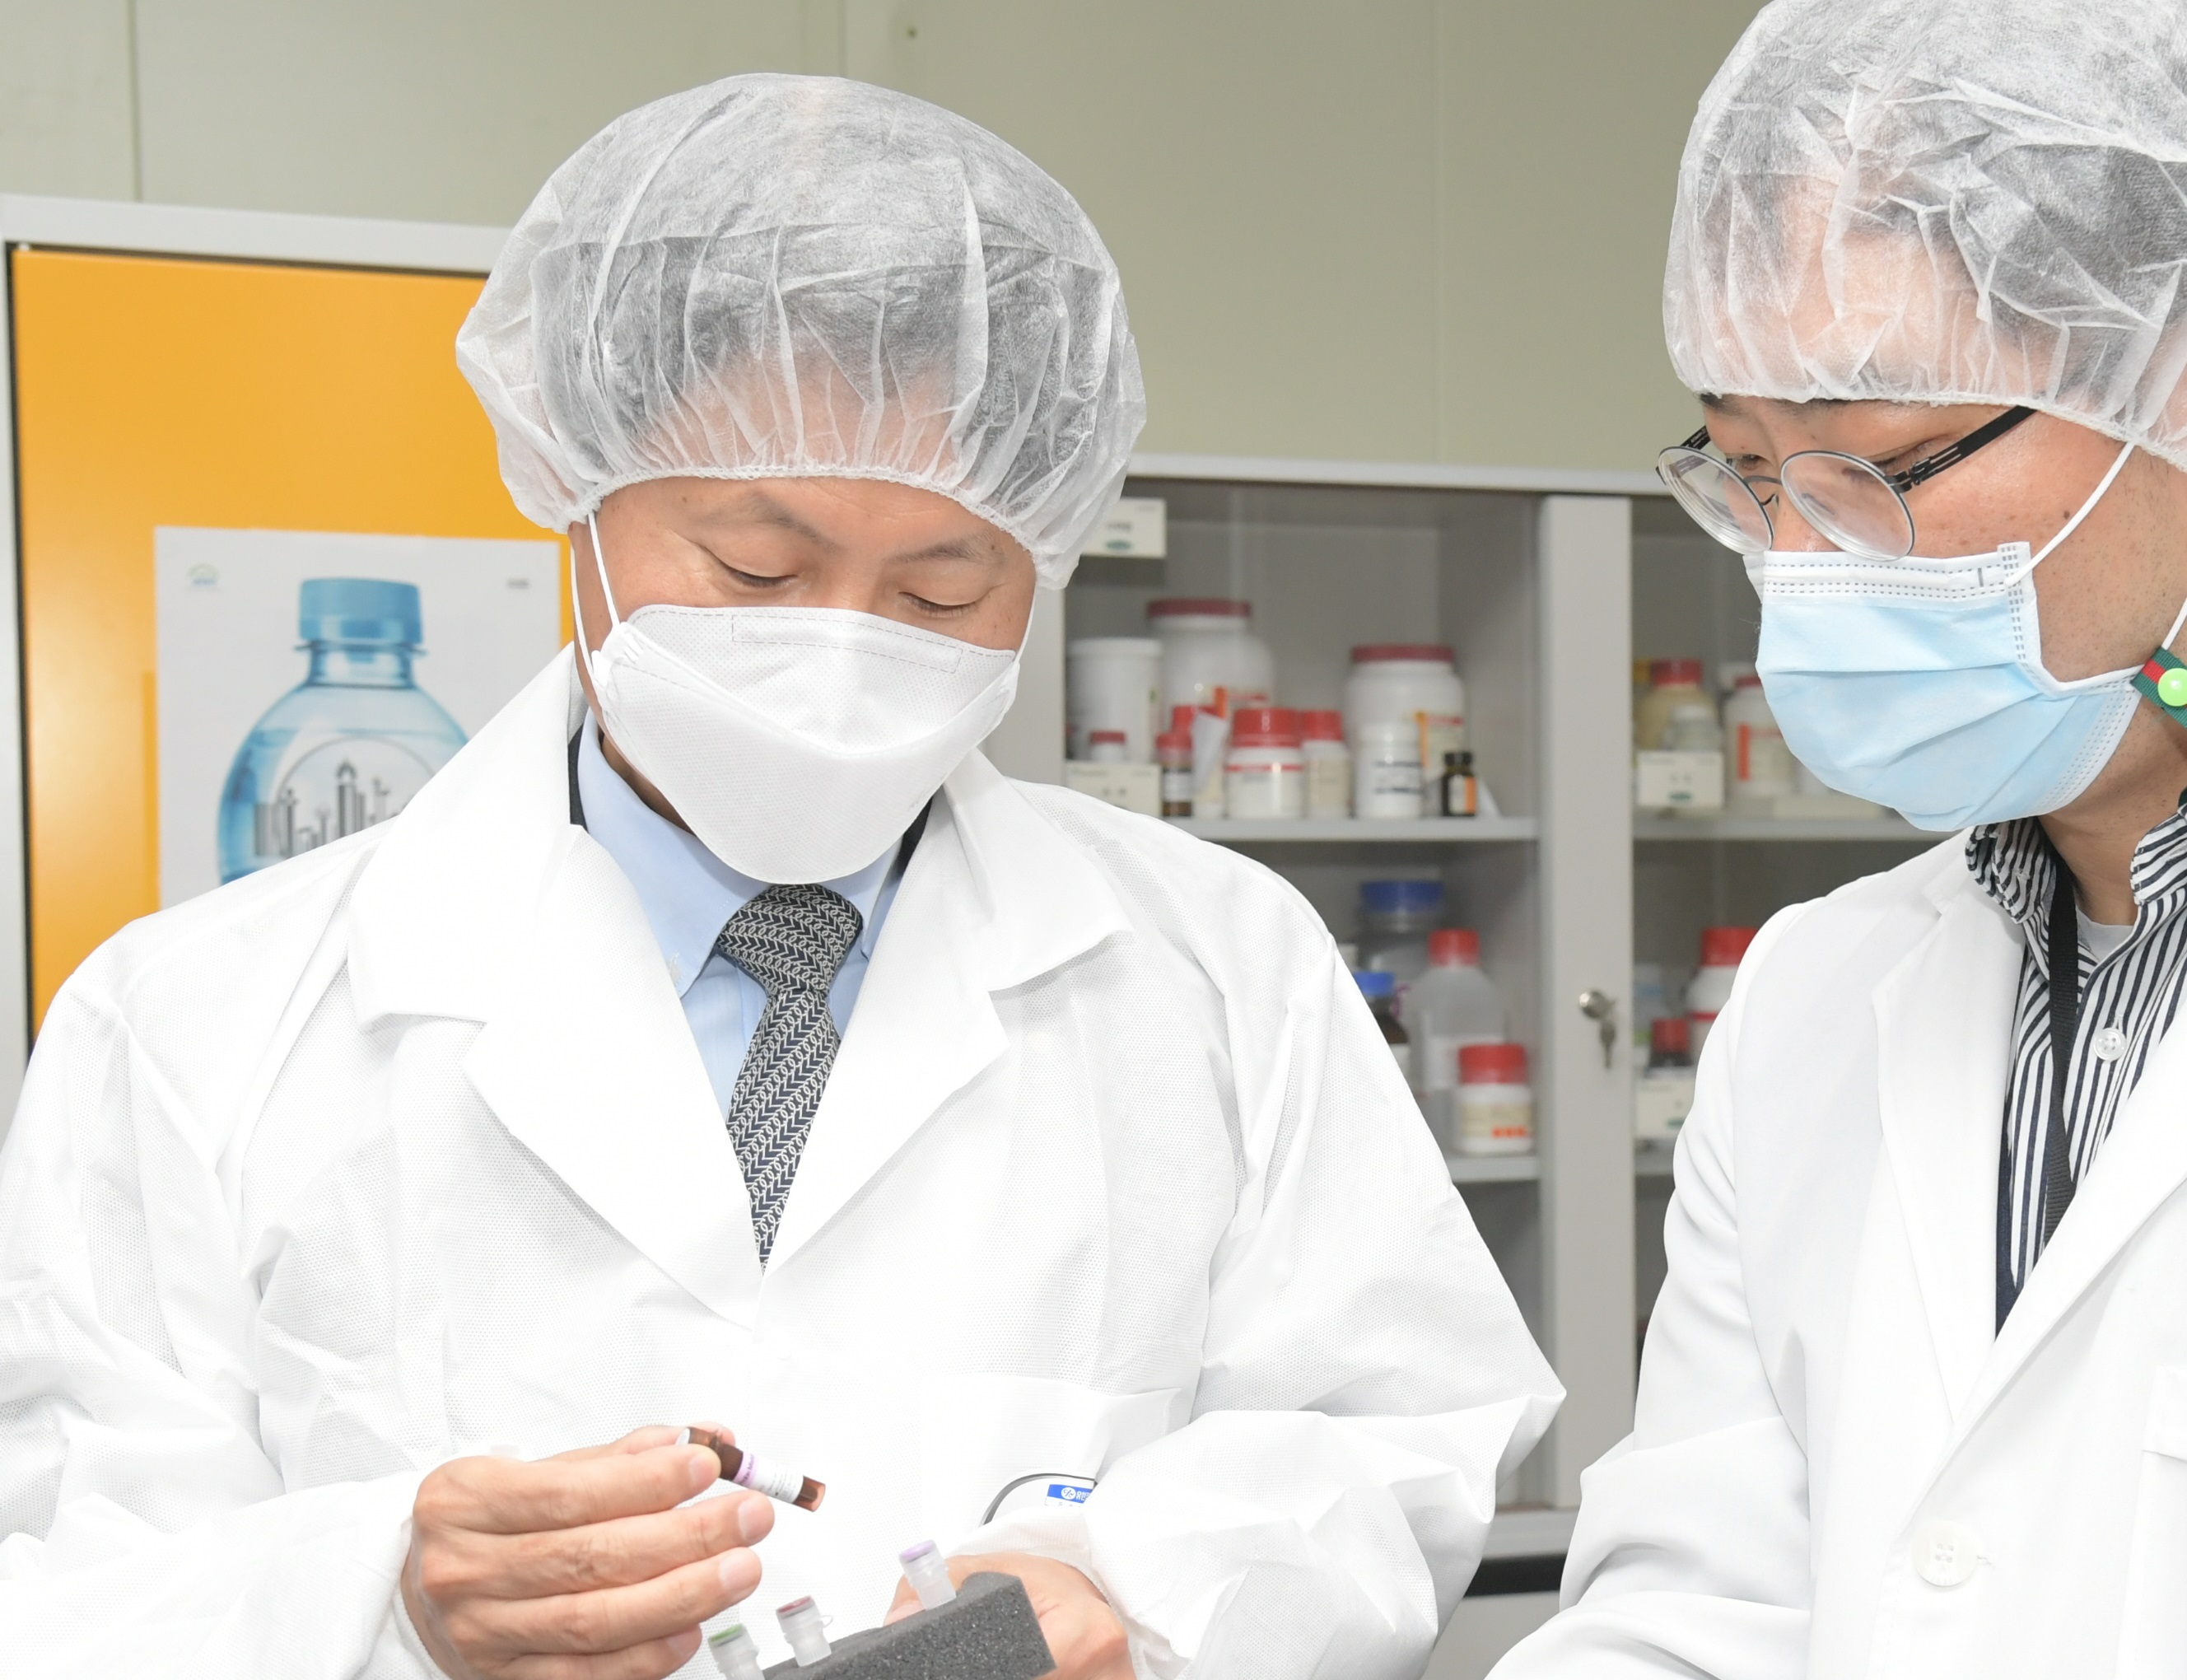 [Dec. 10, 2020] A visit to the COVID-19 diagnostic reagent manufacturer